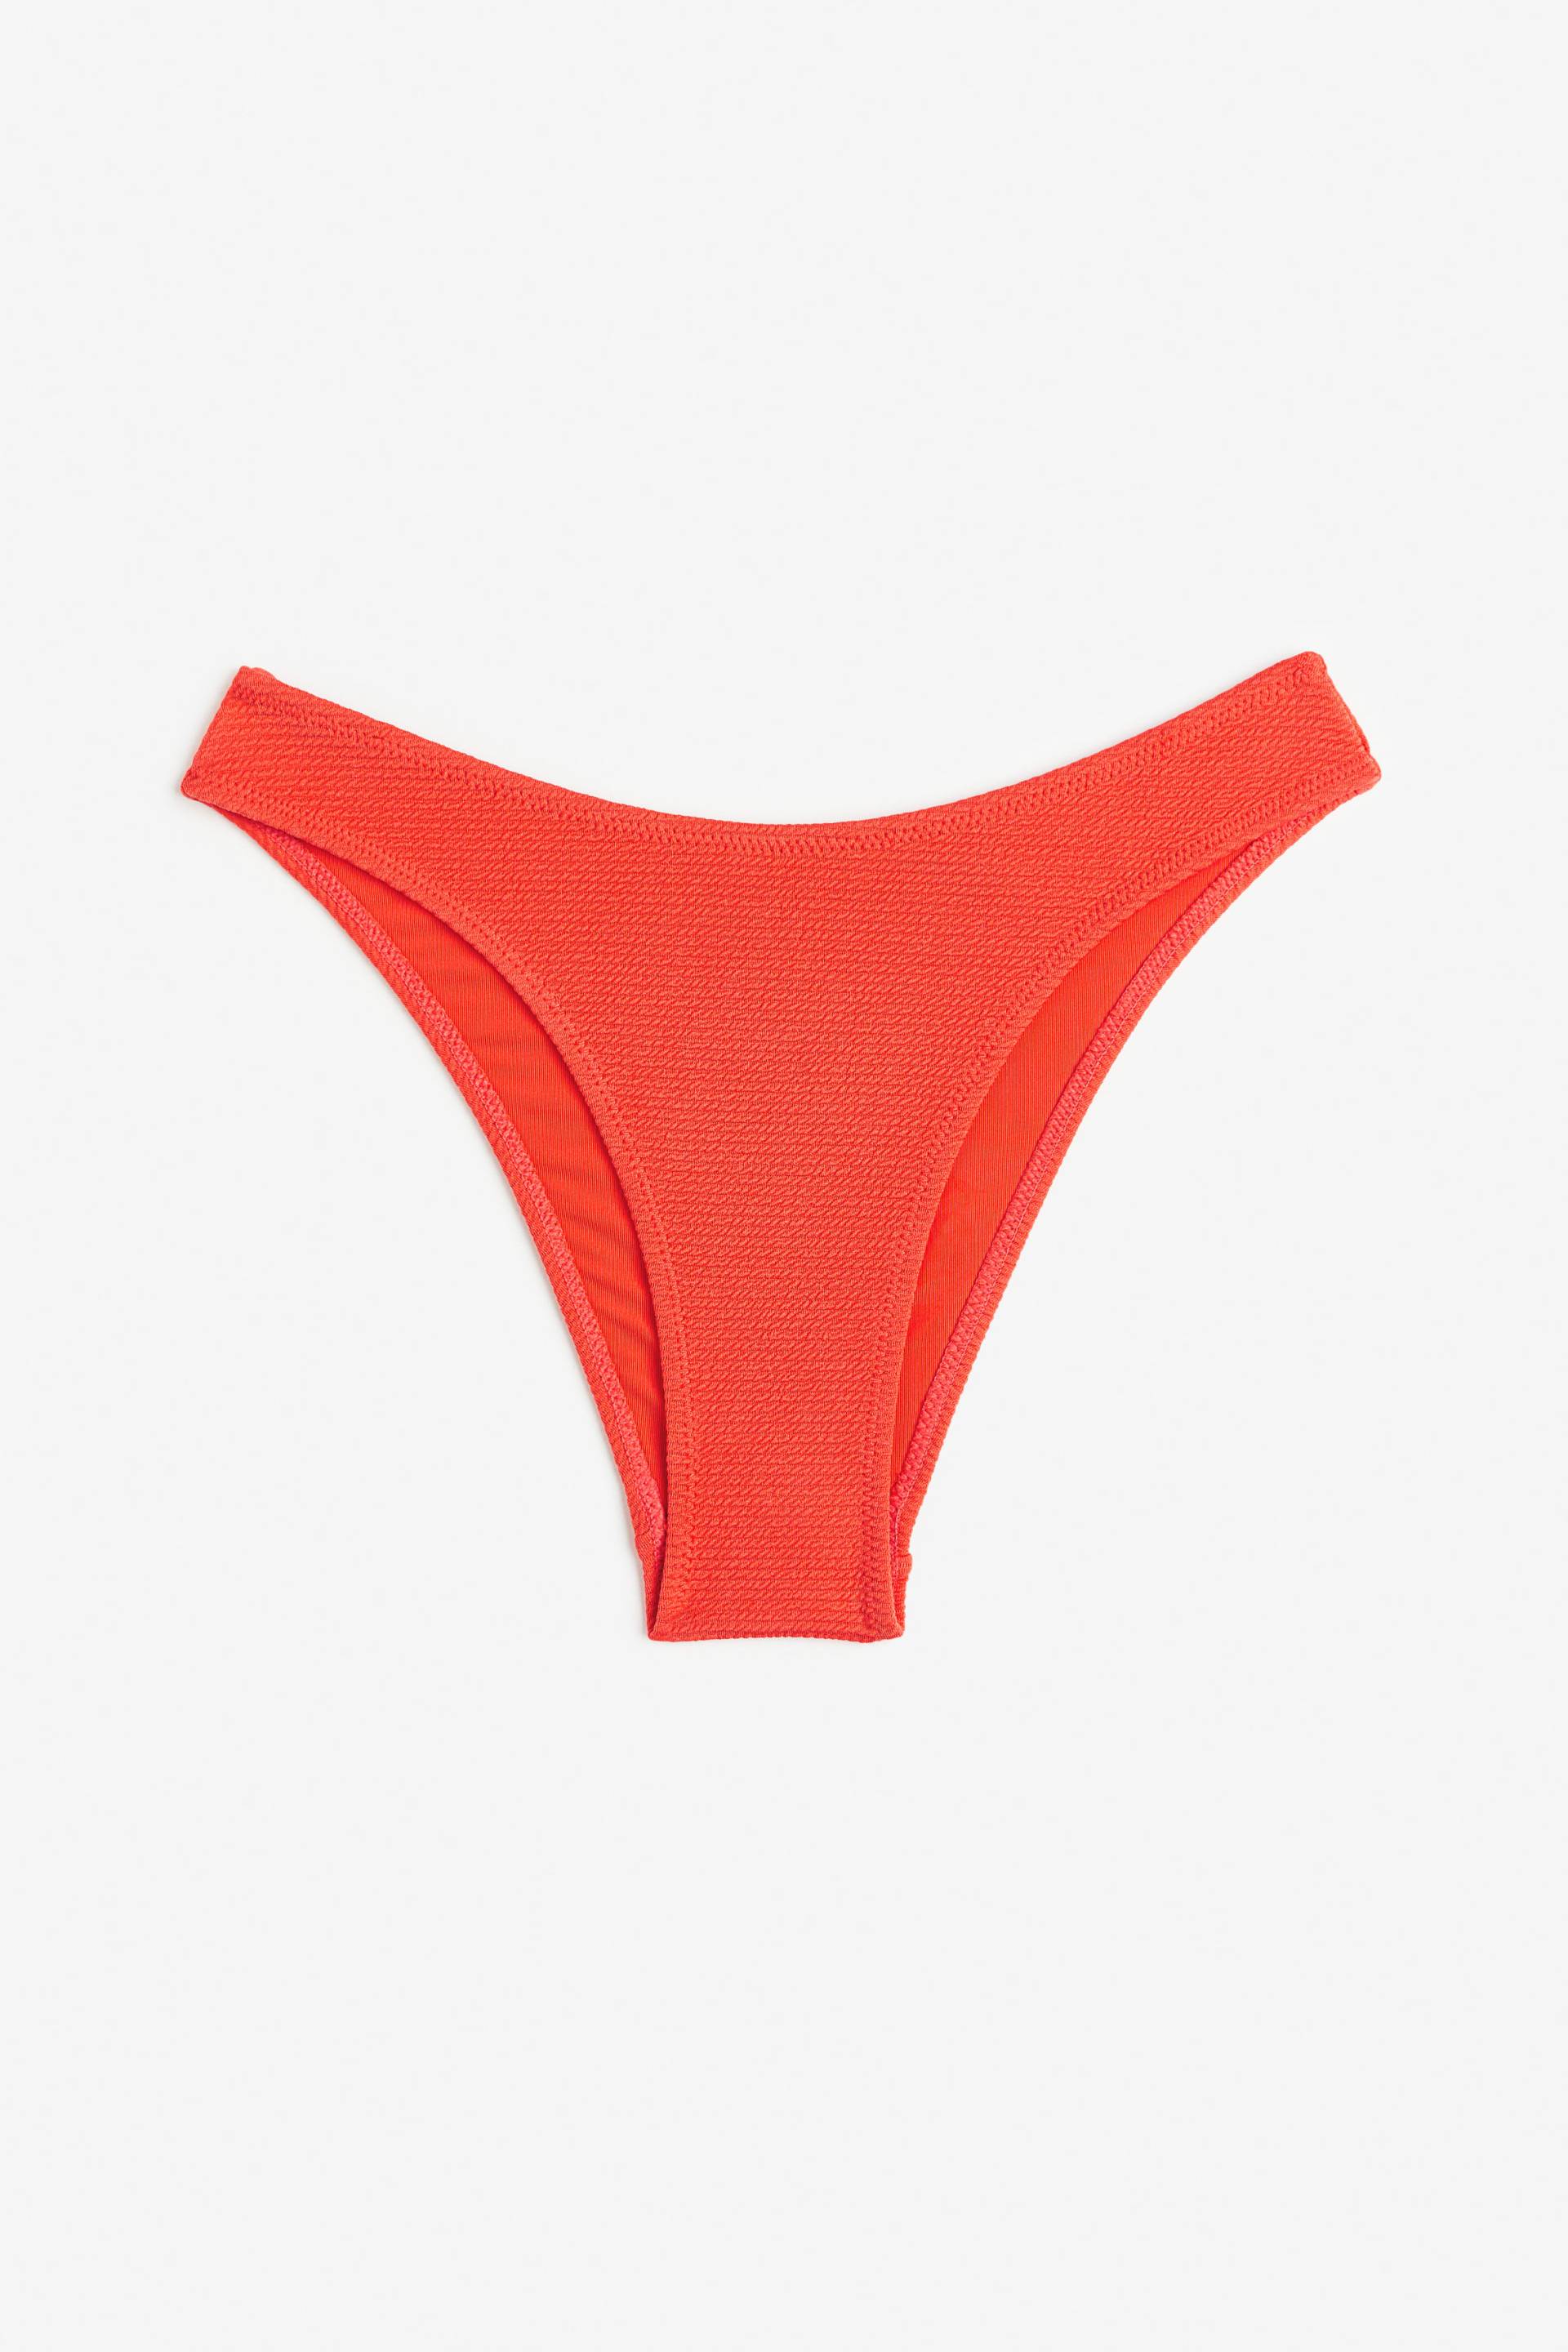 H&M Bikinihose Knallrot, Bikini-Unterteil in Größe 50. Farbe: Bright red 078 von H&M